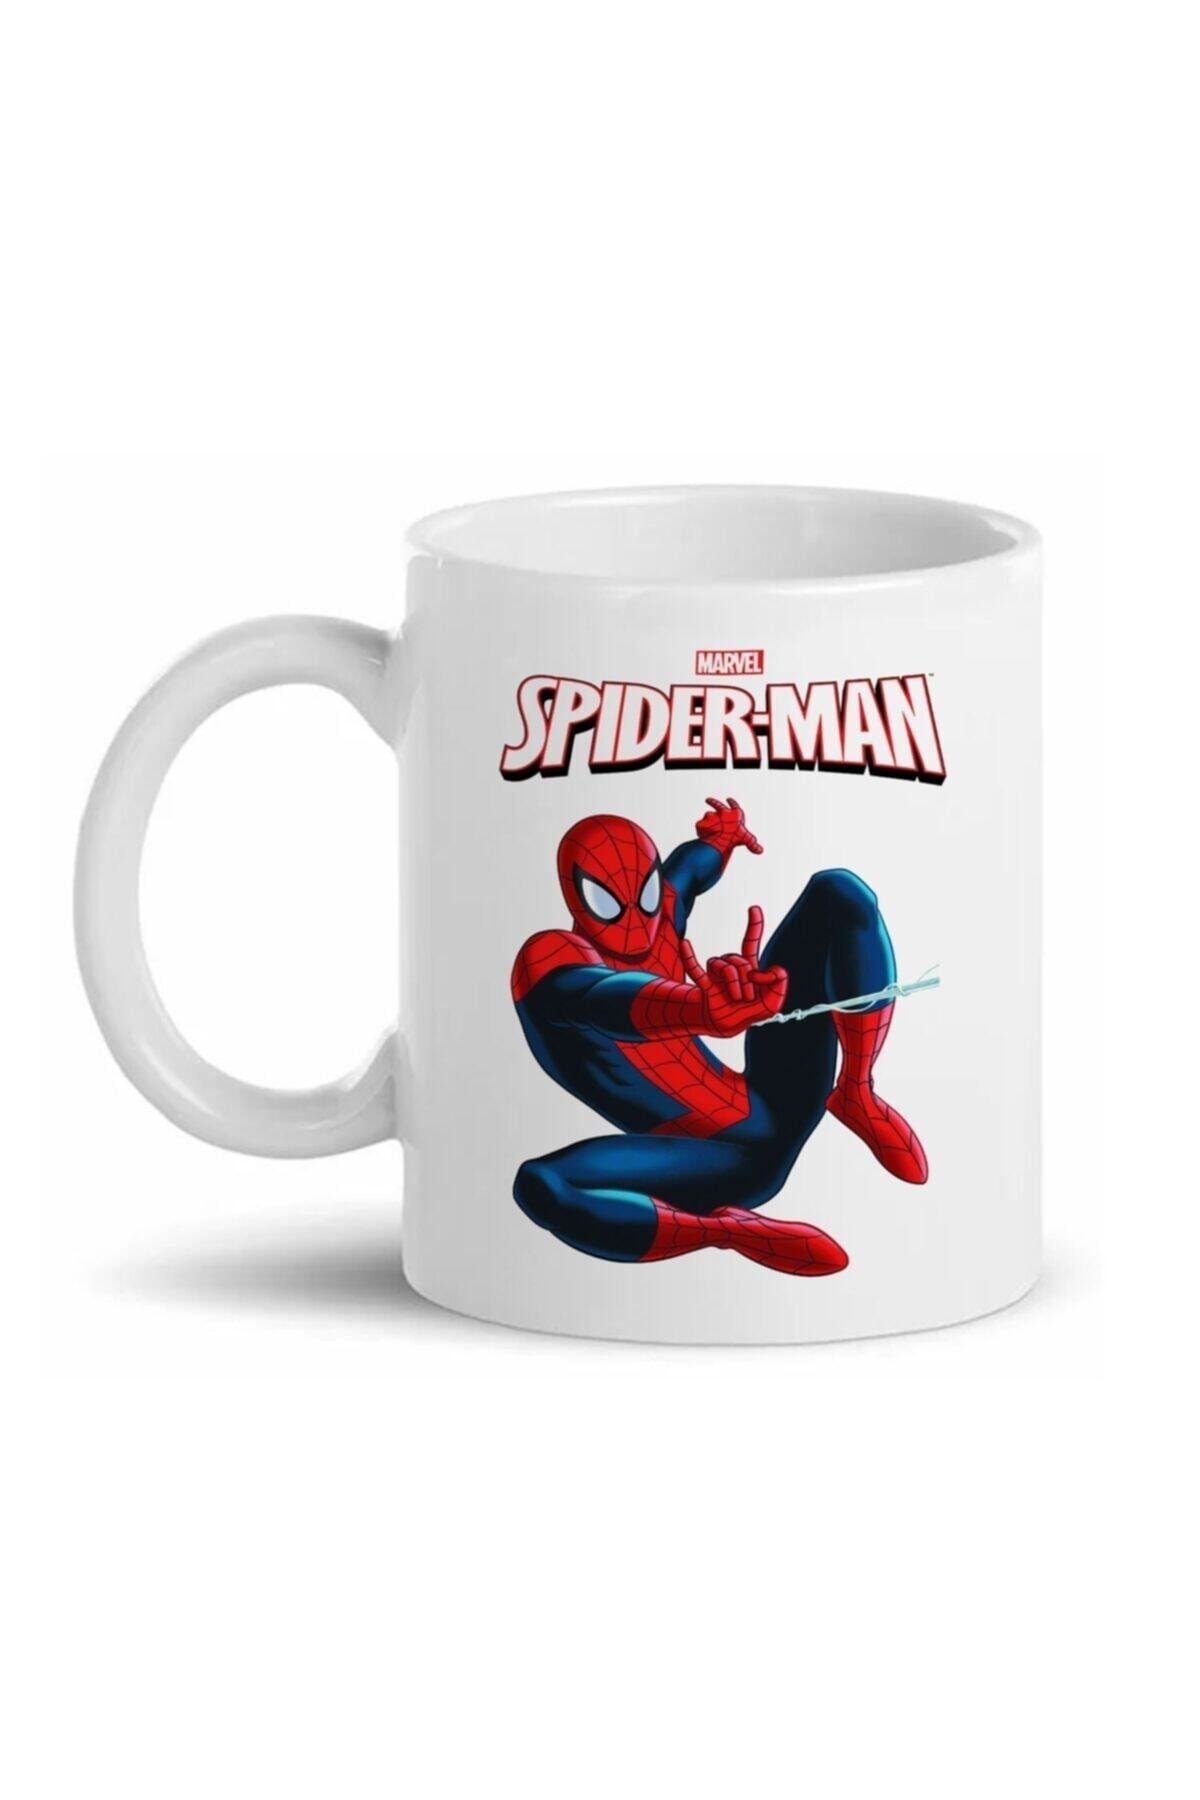 HediyeCenter Spiderman Örümcek Adam Marvel Baskılı Kupa Bardak D05